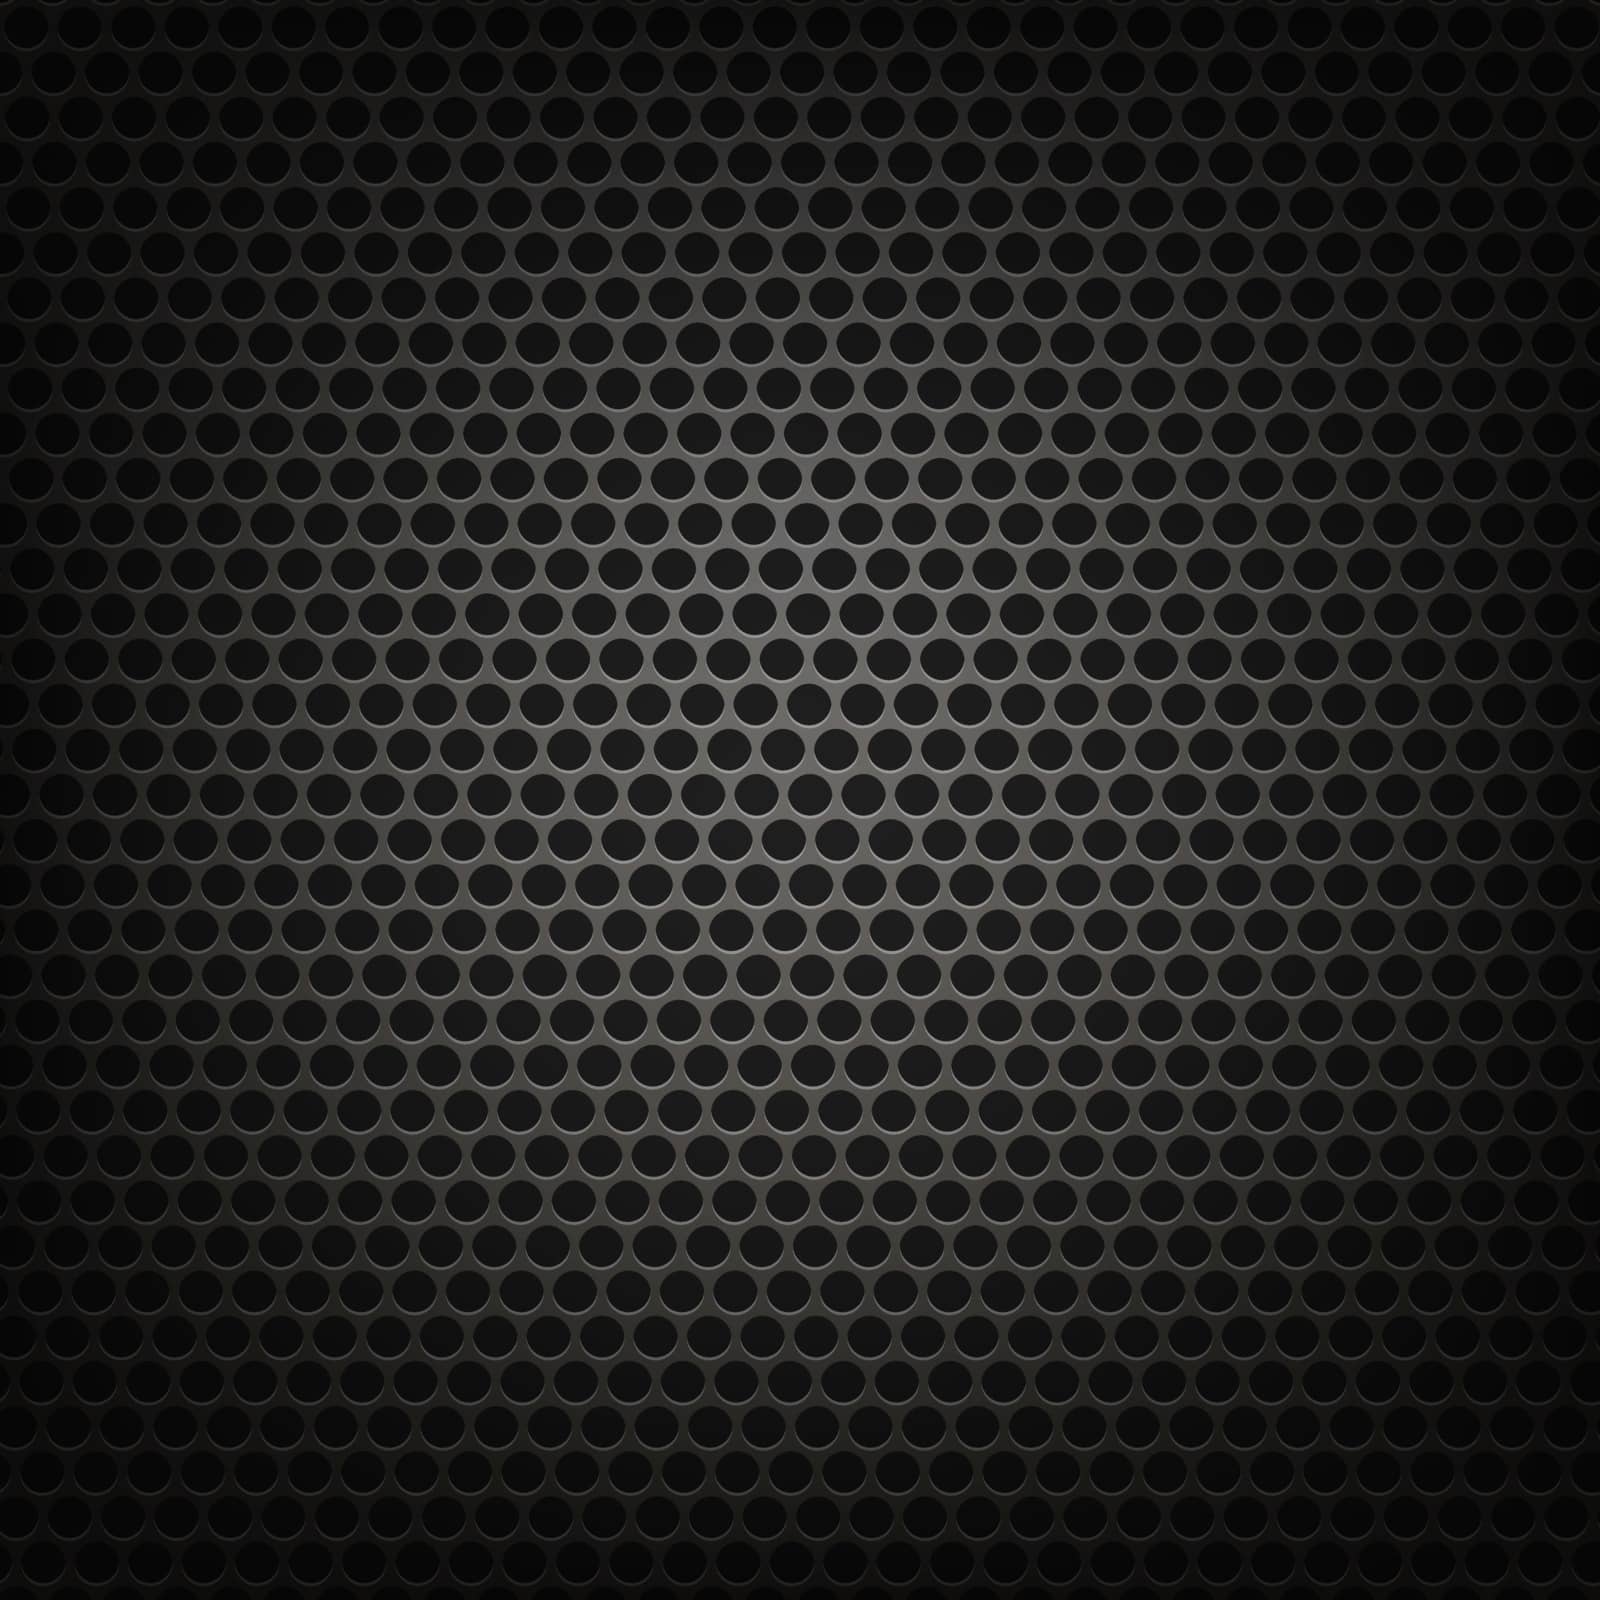 Metallic Grid Perforated Background. Grey Metal Circle Pattern